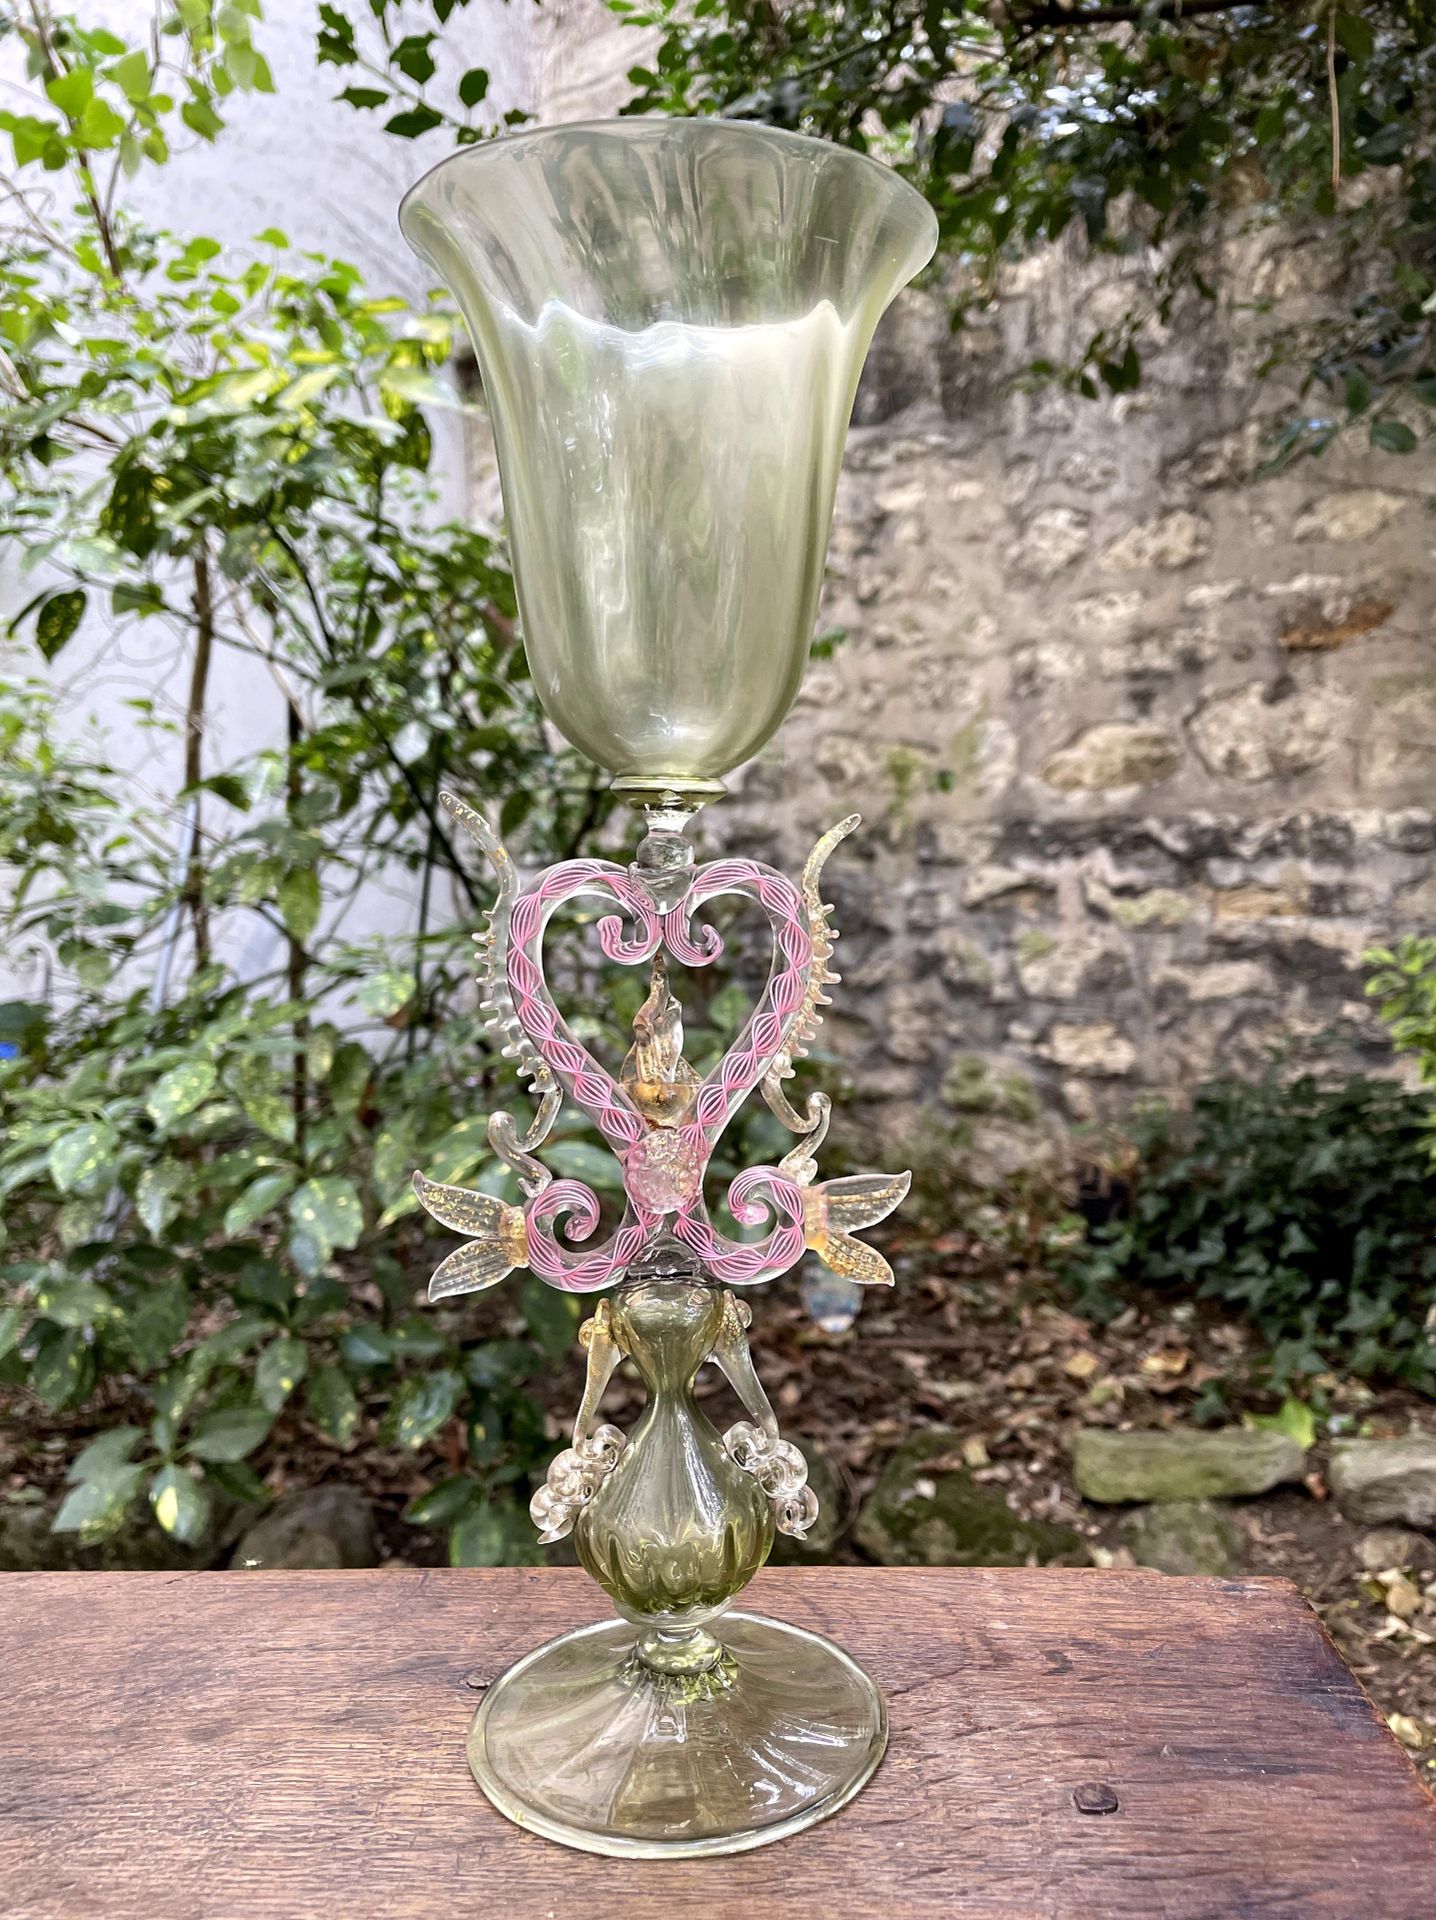 Null Ein großes Glas mit grünen und rosa Beinen, das "Schlangenglas" genannt wir&hellip;